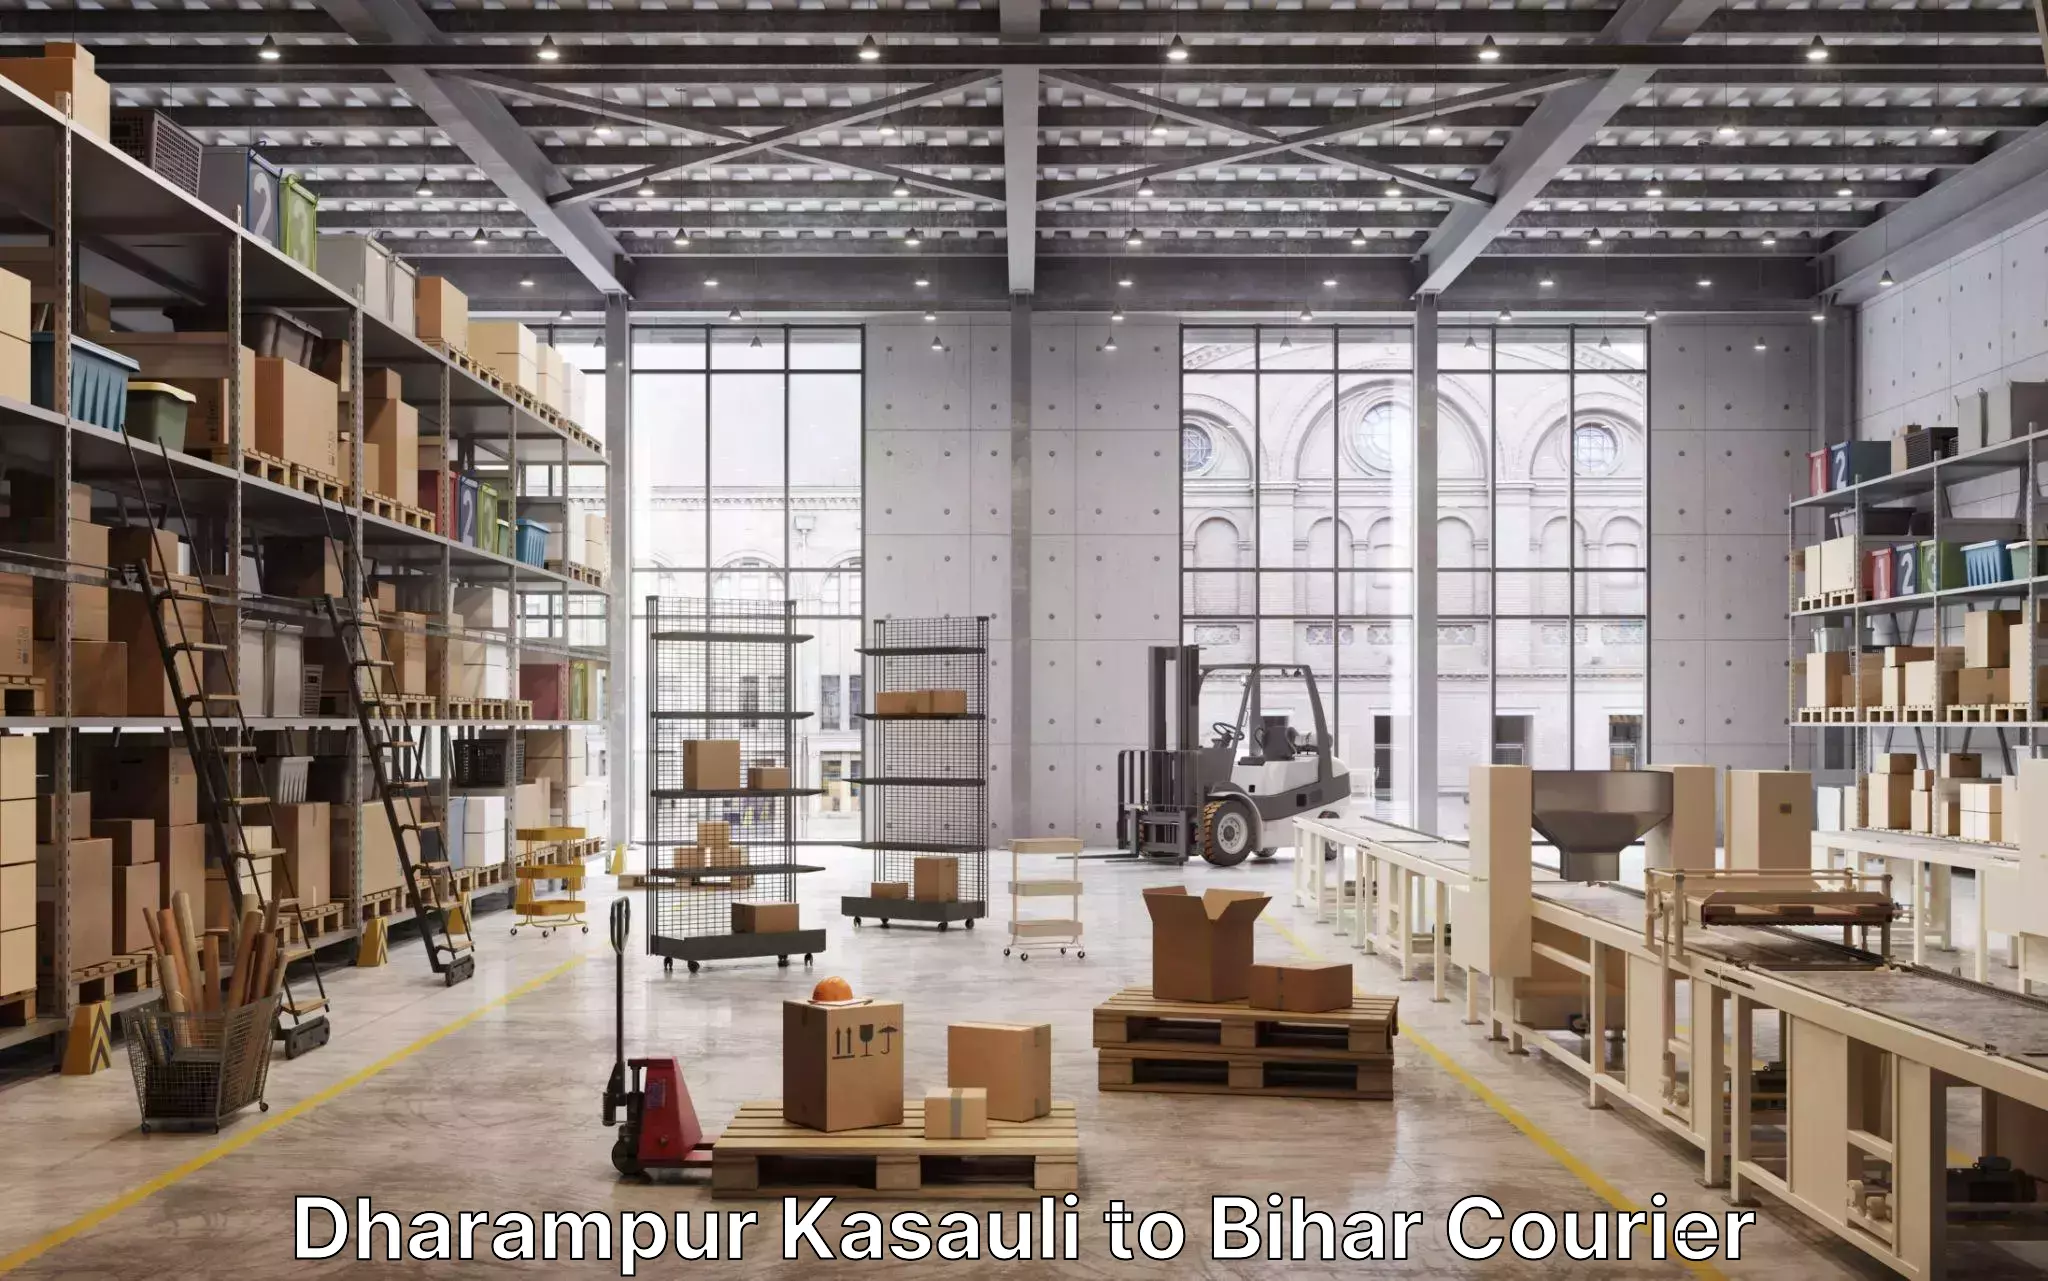 Furniture moving experts Dharampur Kasauli to Munger